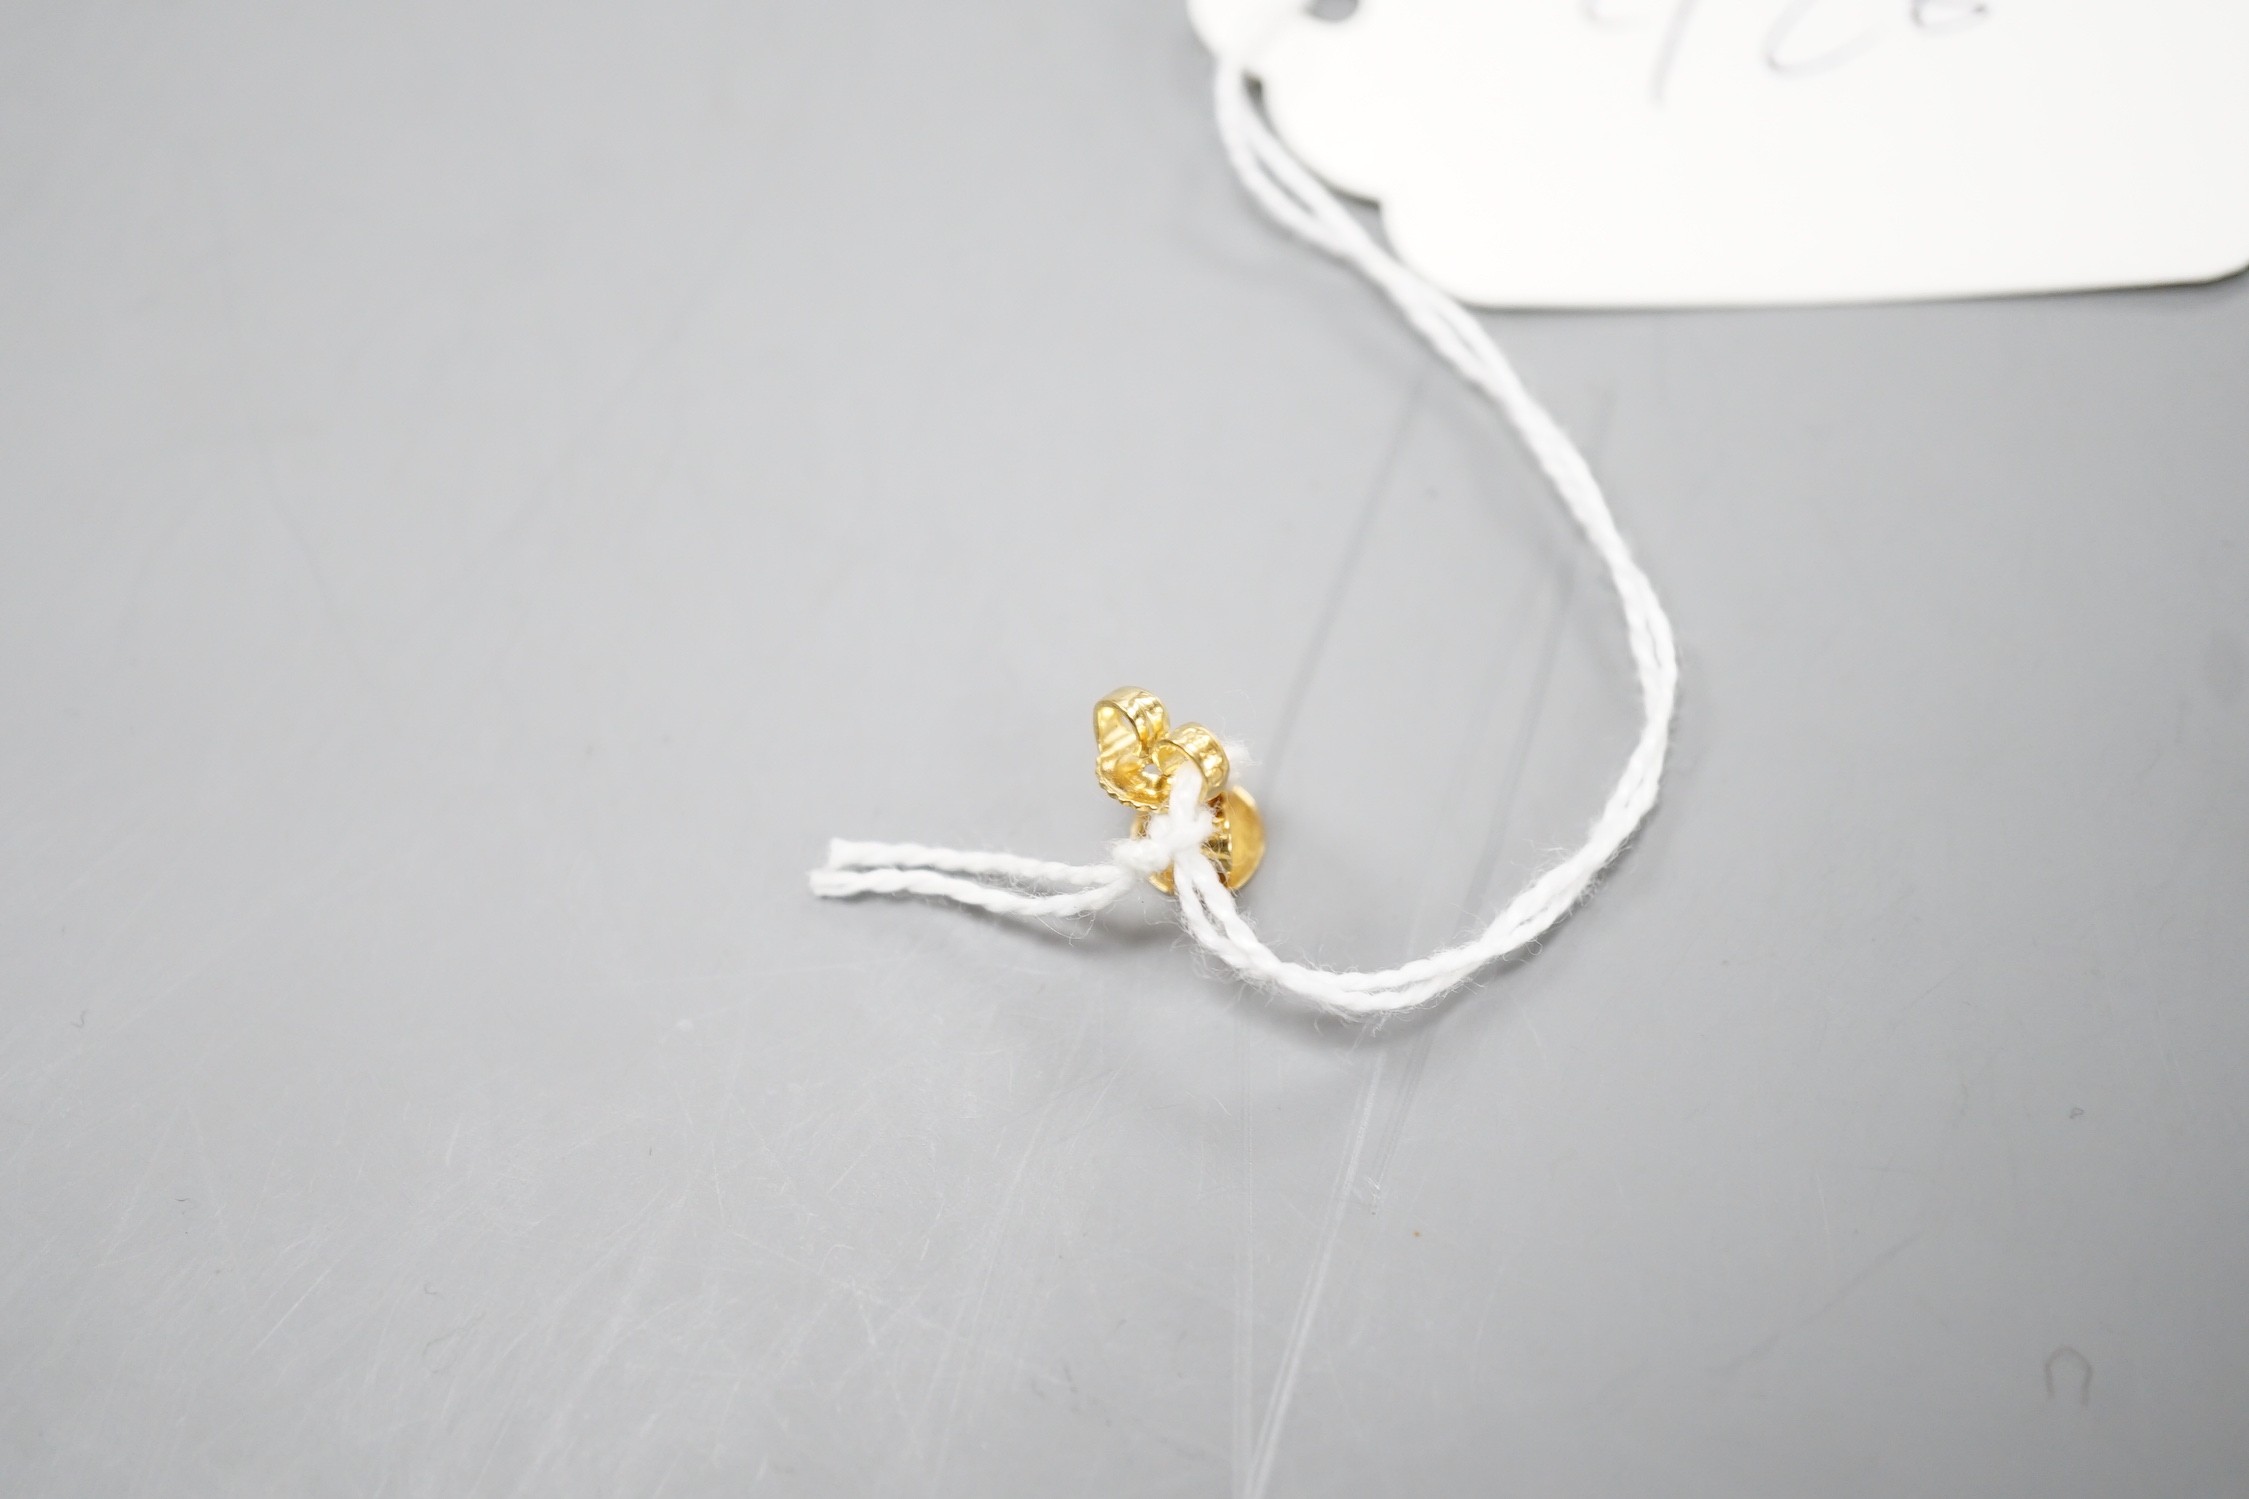 A pair of 750 yellow metal frog earrings, 15mm, 4.9 grams.